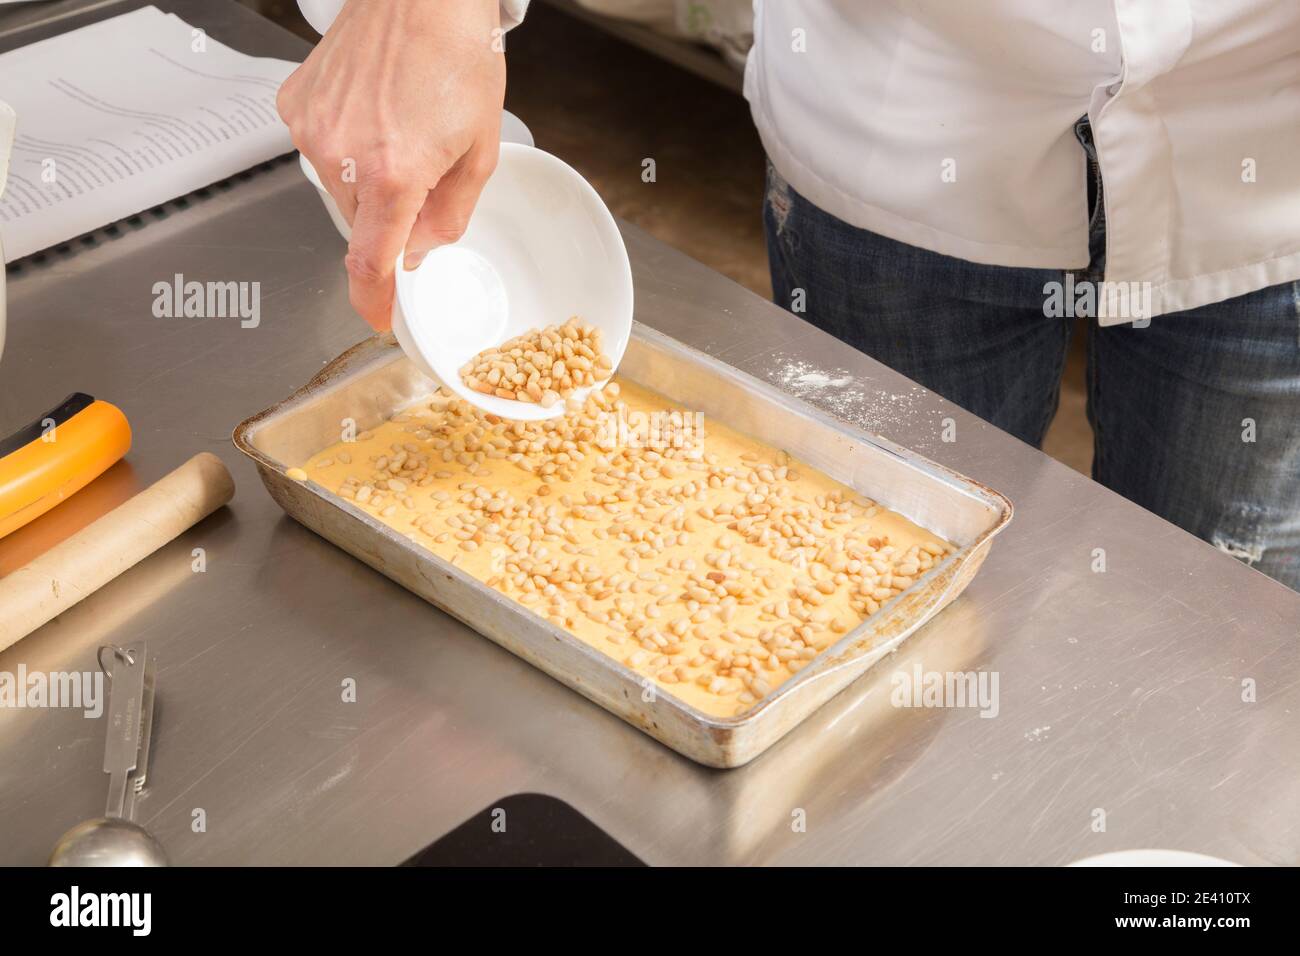 Un tas de pignons de pin sur la pâte dans un plat de cuisson. Le processus de fabrication de biscuits avec des carottes. Gros plan. Banque D'Images